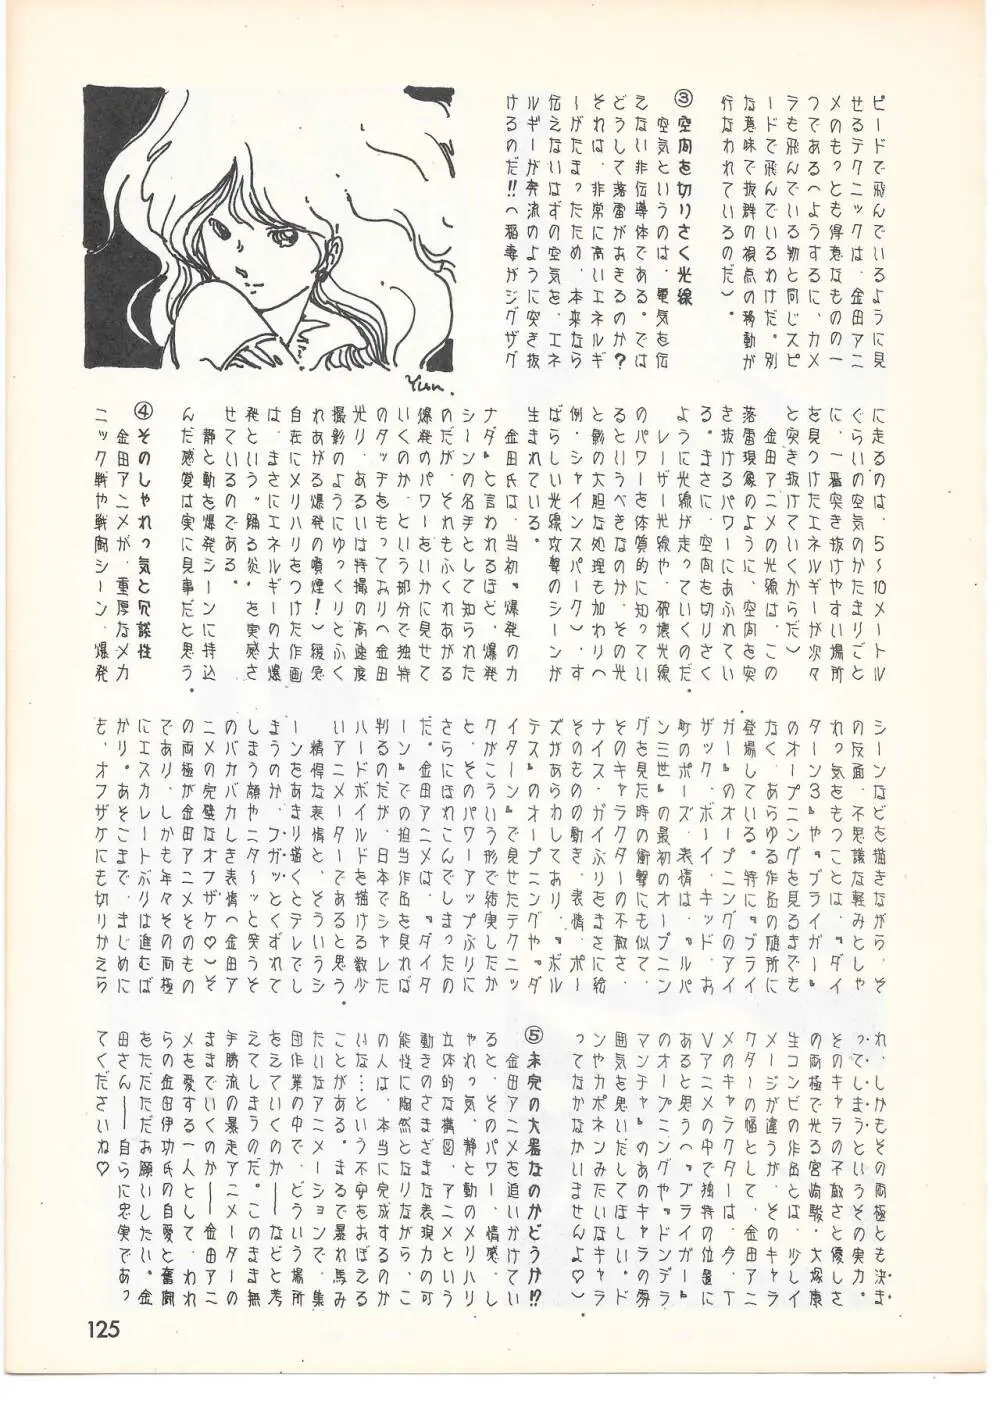 THE ANIMATOR 1 金田伊功特集号 120ページ